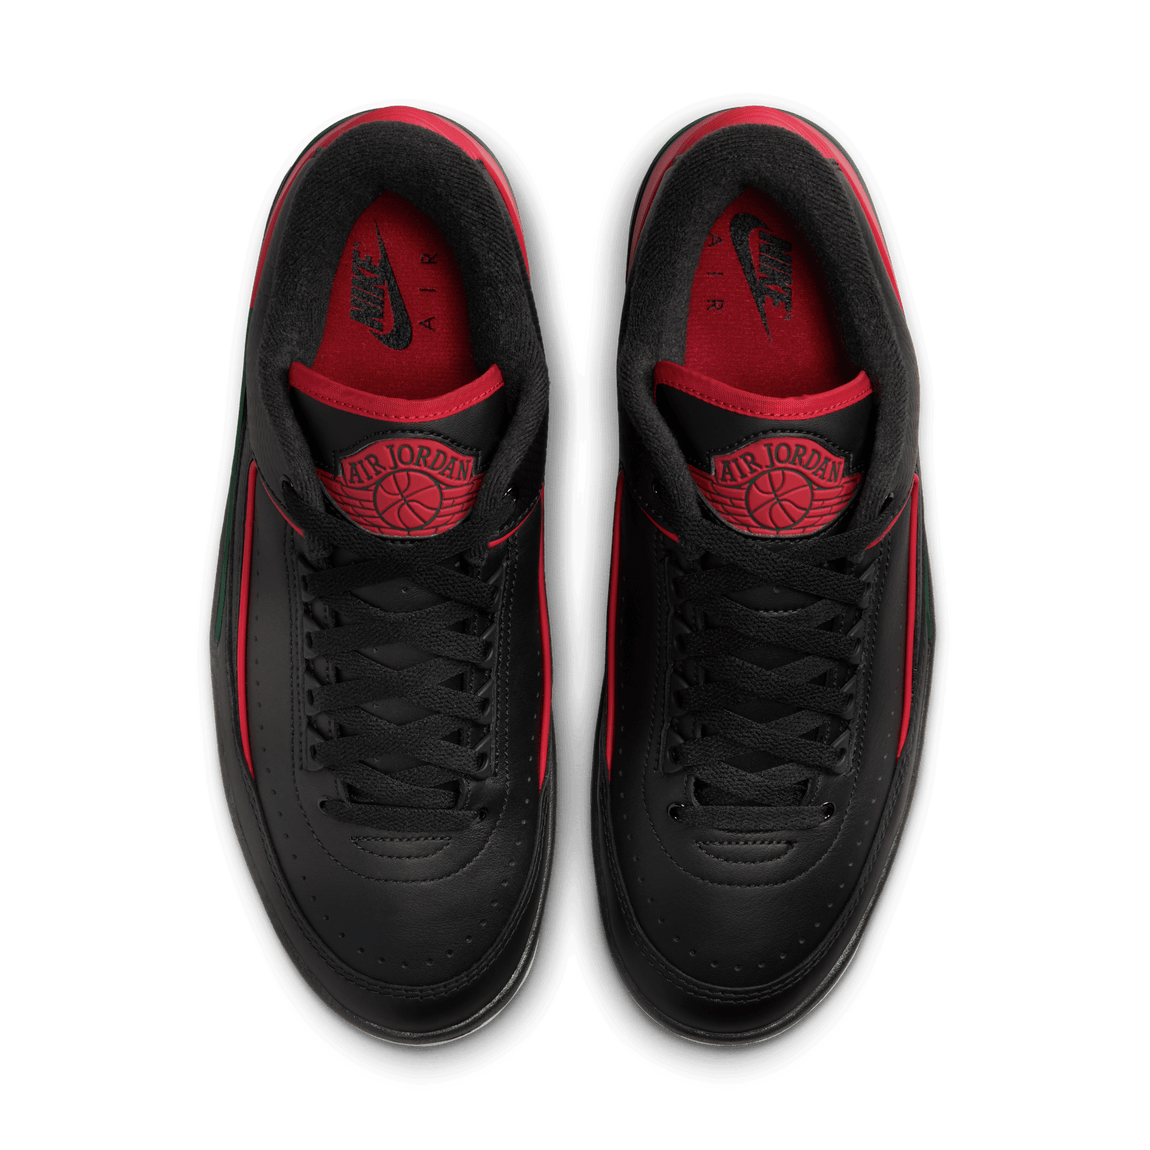 Air Jordan 2 Retro Low (Black/Fire Red-Fir-Cement Grey) - Air Jordan 2 Retro Low (Black/Fire Red-Fir-Cement Grey) - 